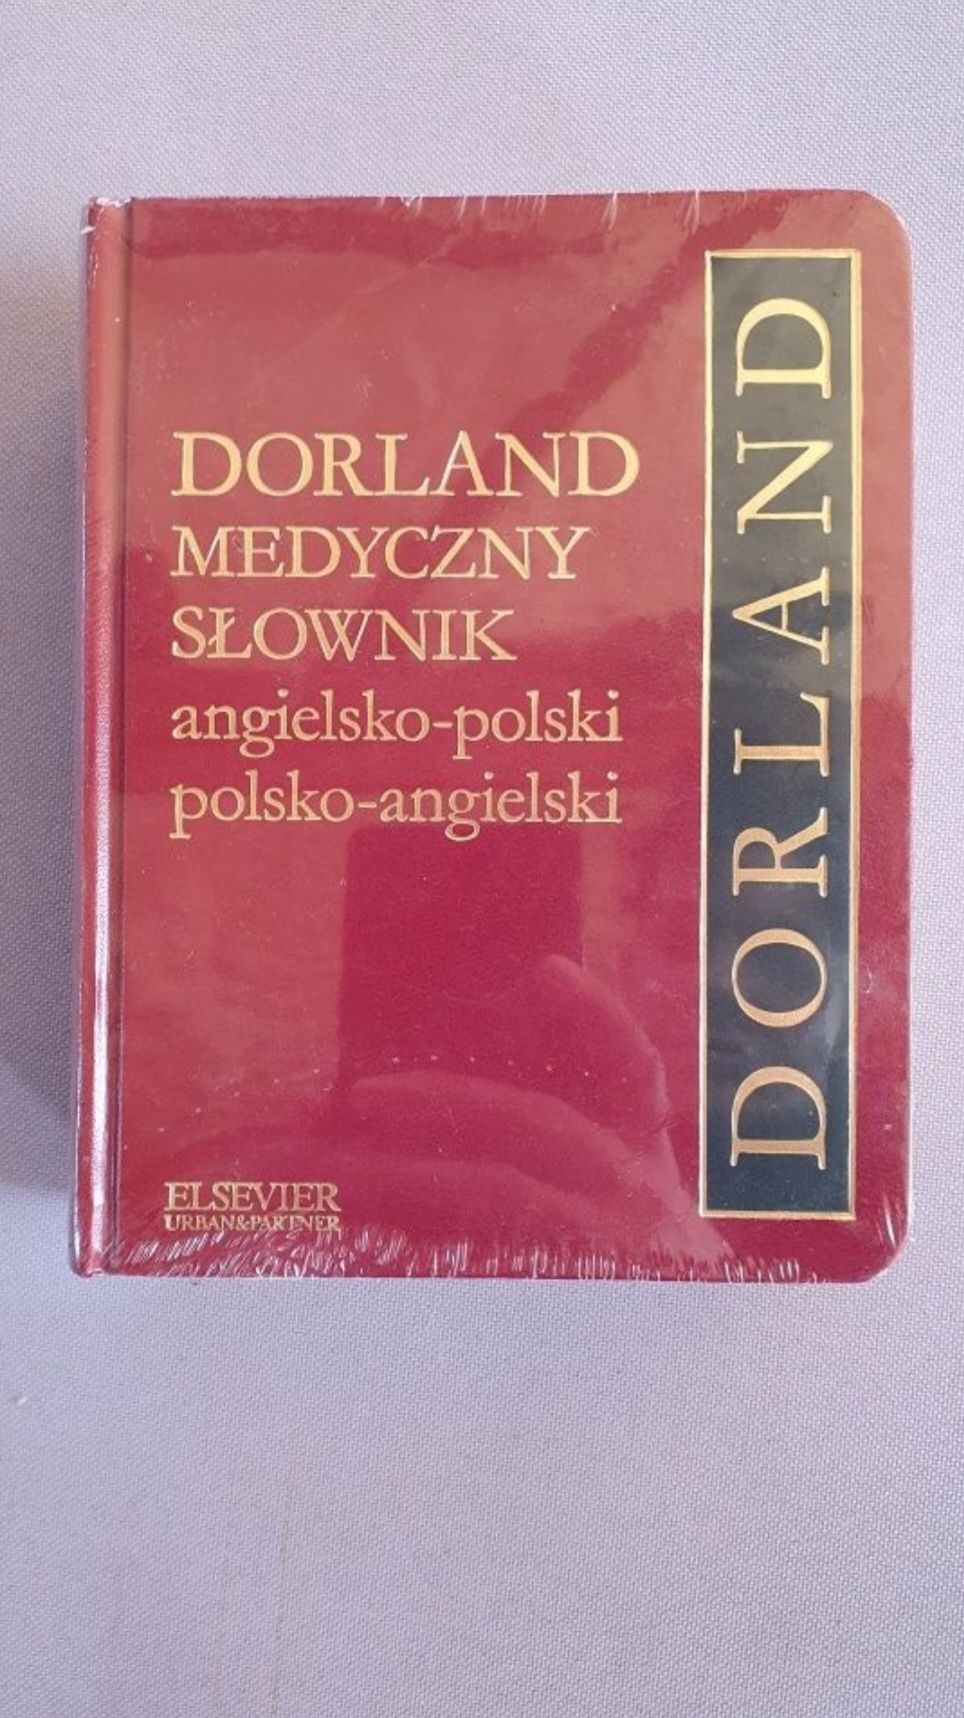 Dorland medyczny słownik